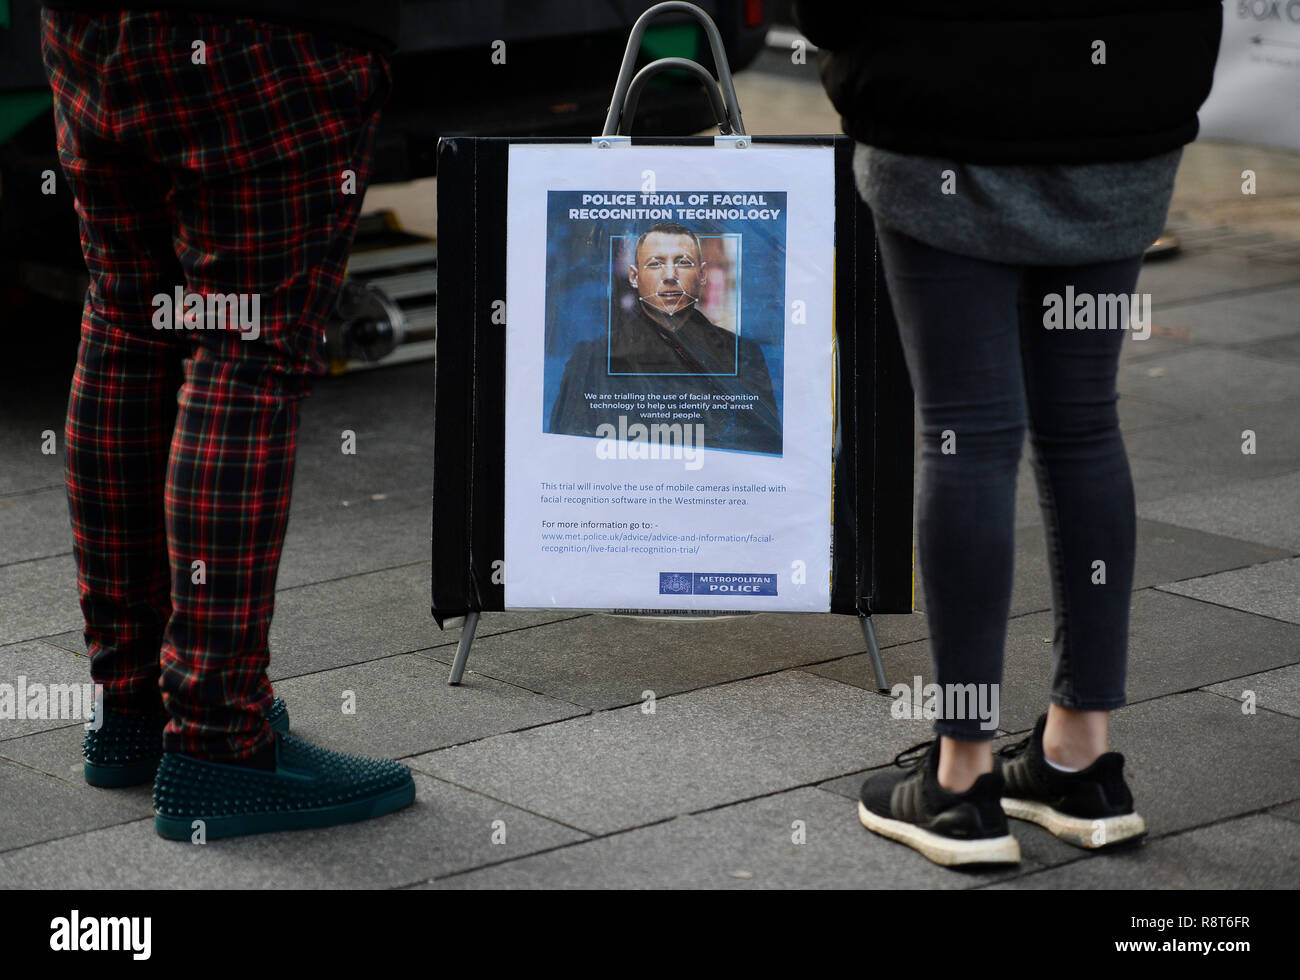 Le persone a smettere di guardare una scheda dettagli della tecnologia di riconoscimento facciale in uso nel quadrato di Leicester, Londra. Foto Stock